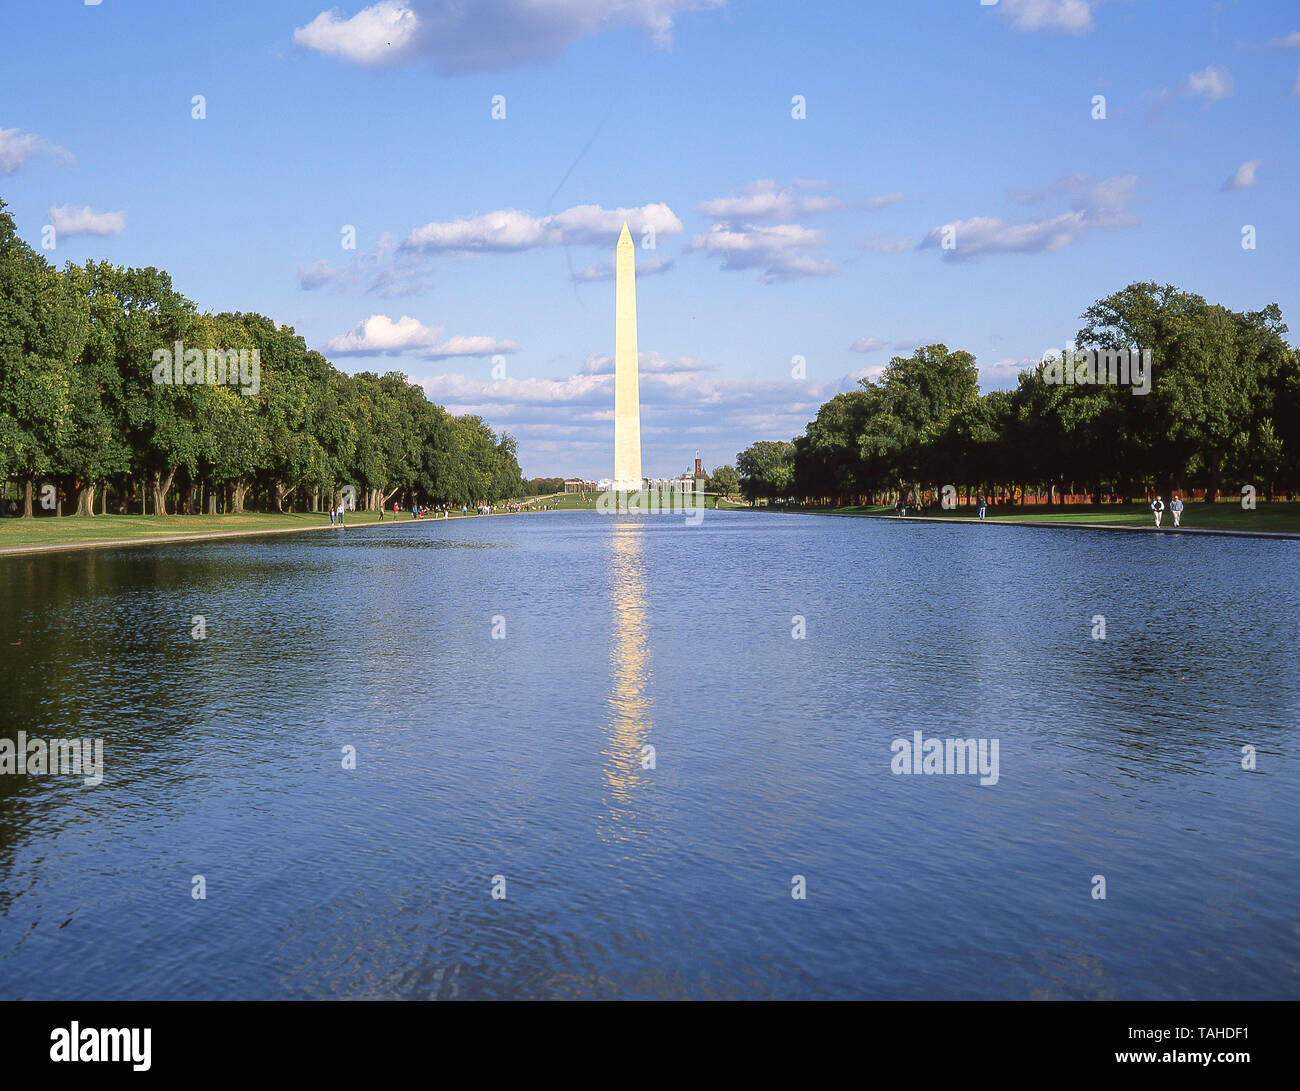 Washington Monument und der Lincoln Memorial Reflecting Pool, Washington DC, Vereinigte Staaten von Amerika Stockfoto